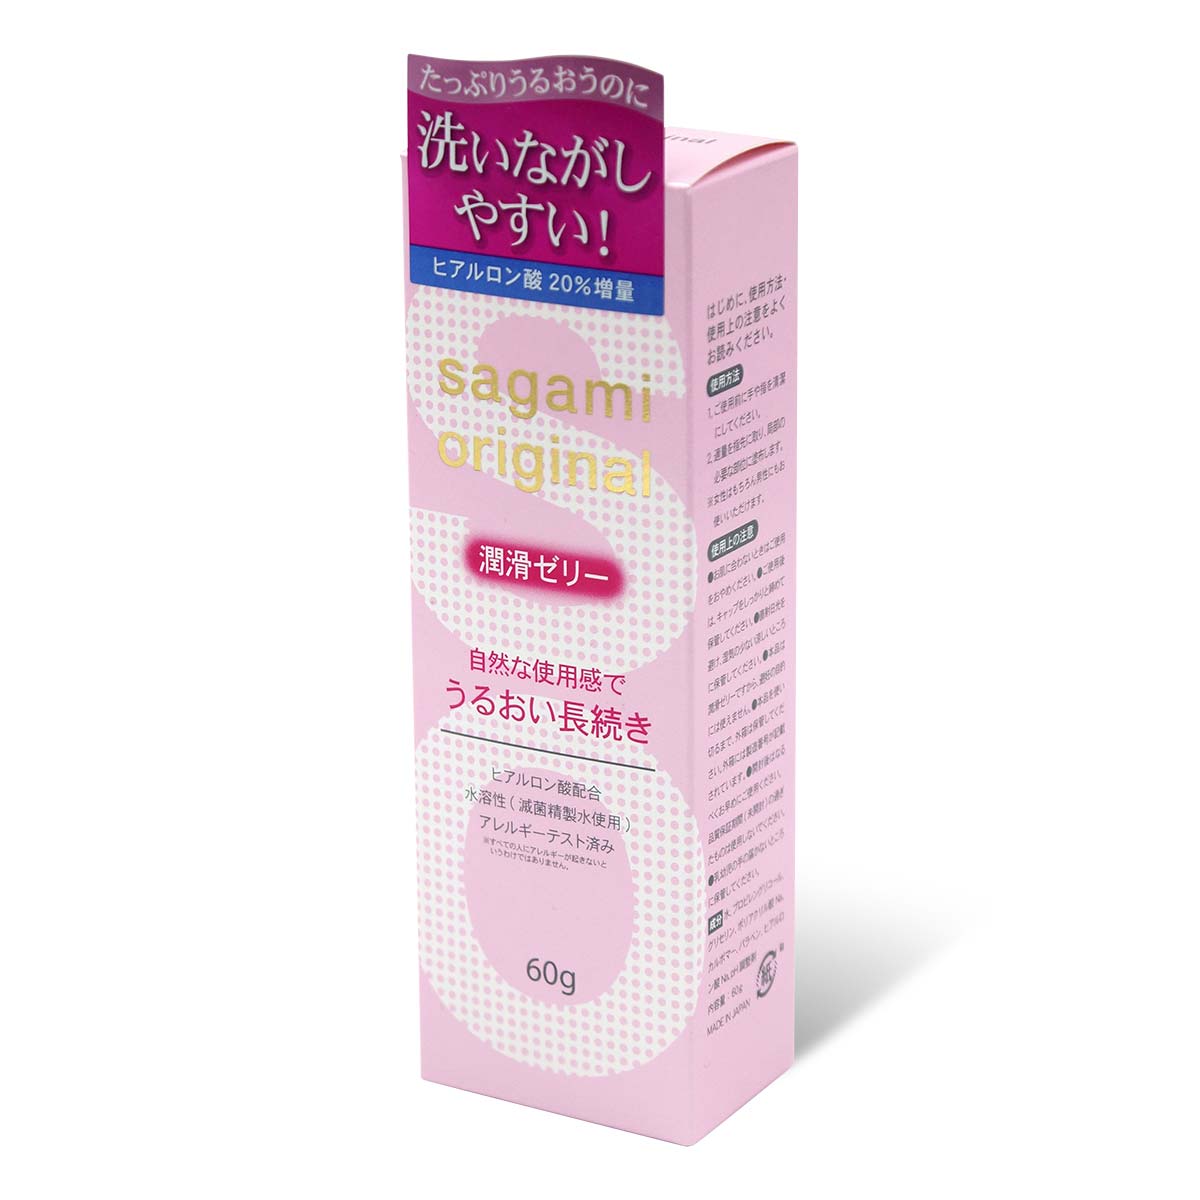 Sagami Original Lubricating Gel 60g Water-based Lubricant (Defective Packaging)-thumb_1